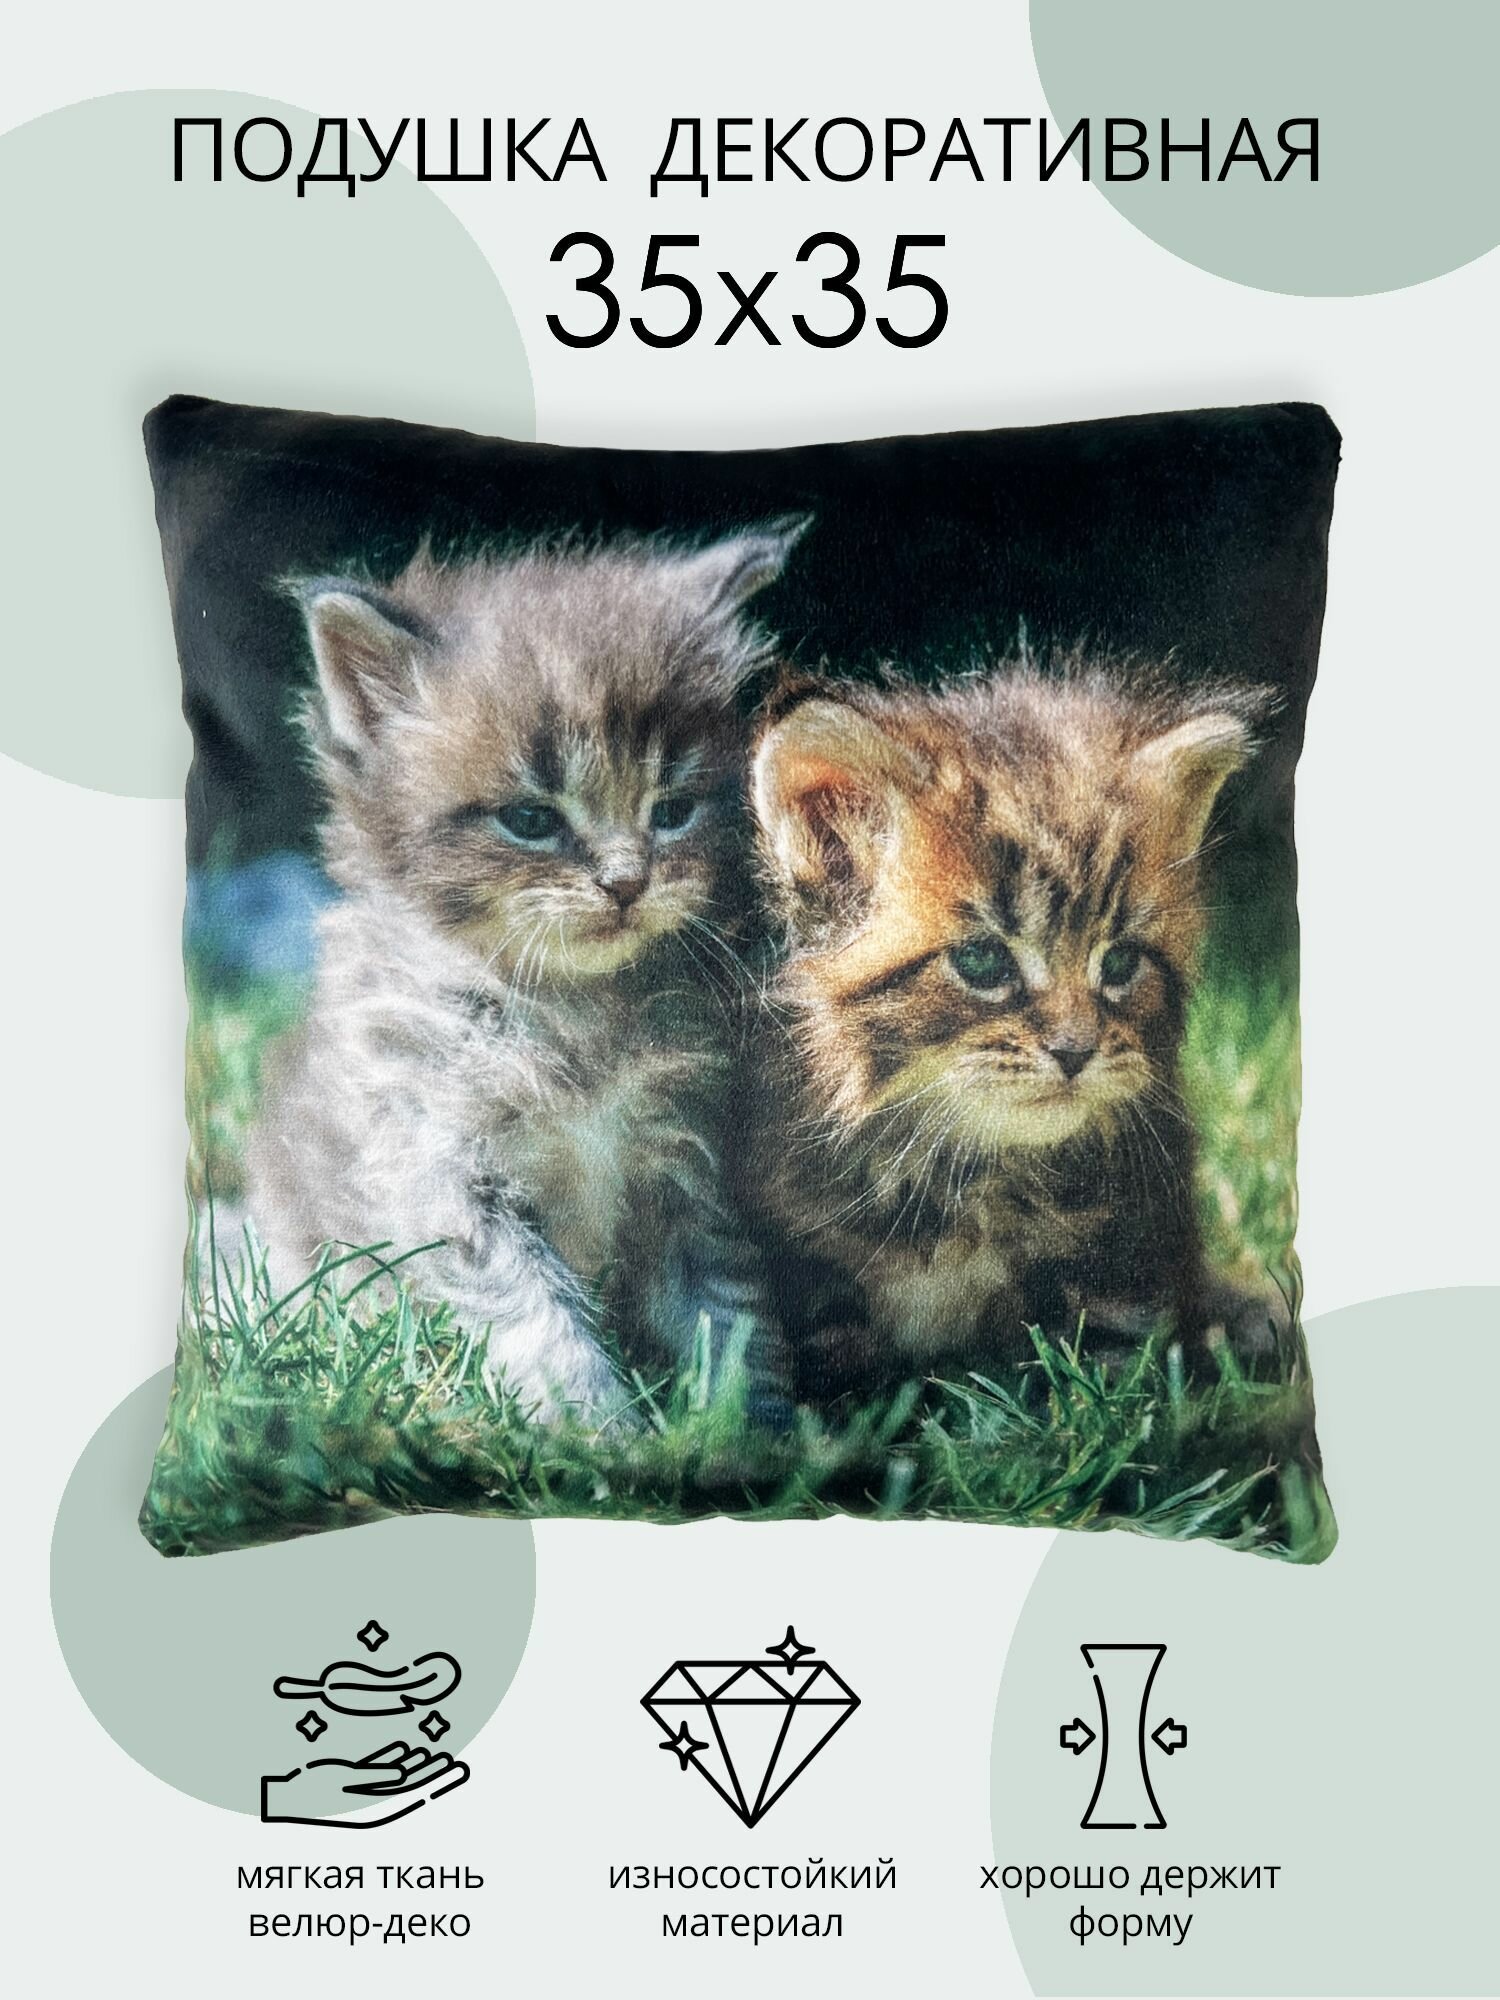 Подушка декоративная Сонные котики, подушка из велюра, для дивана и кресла, подушка в подарок, размер 35х35 см.